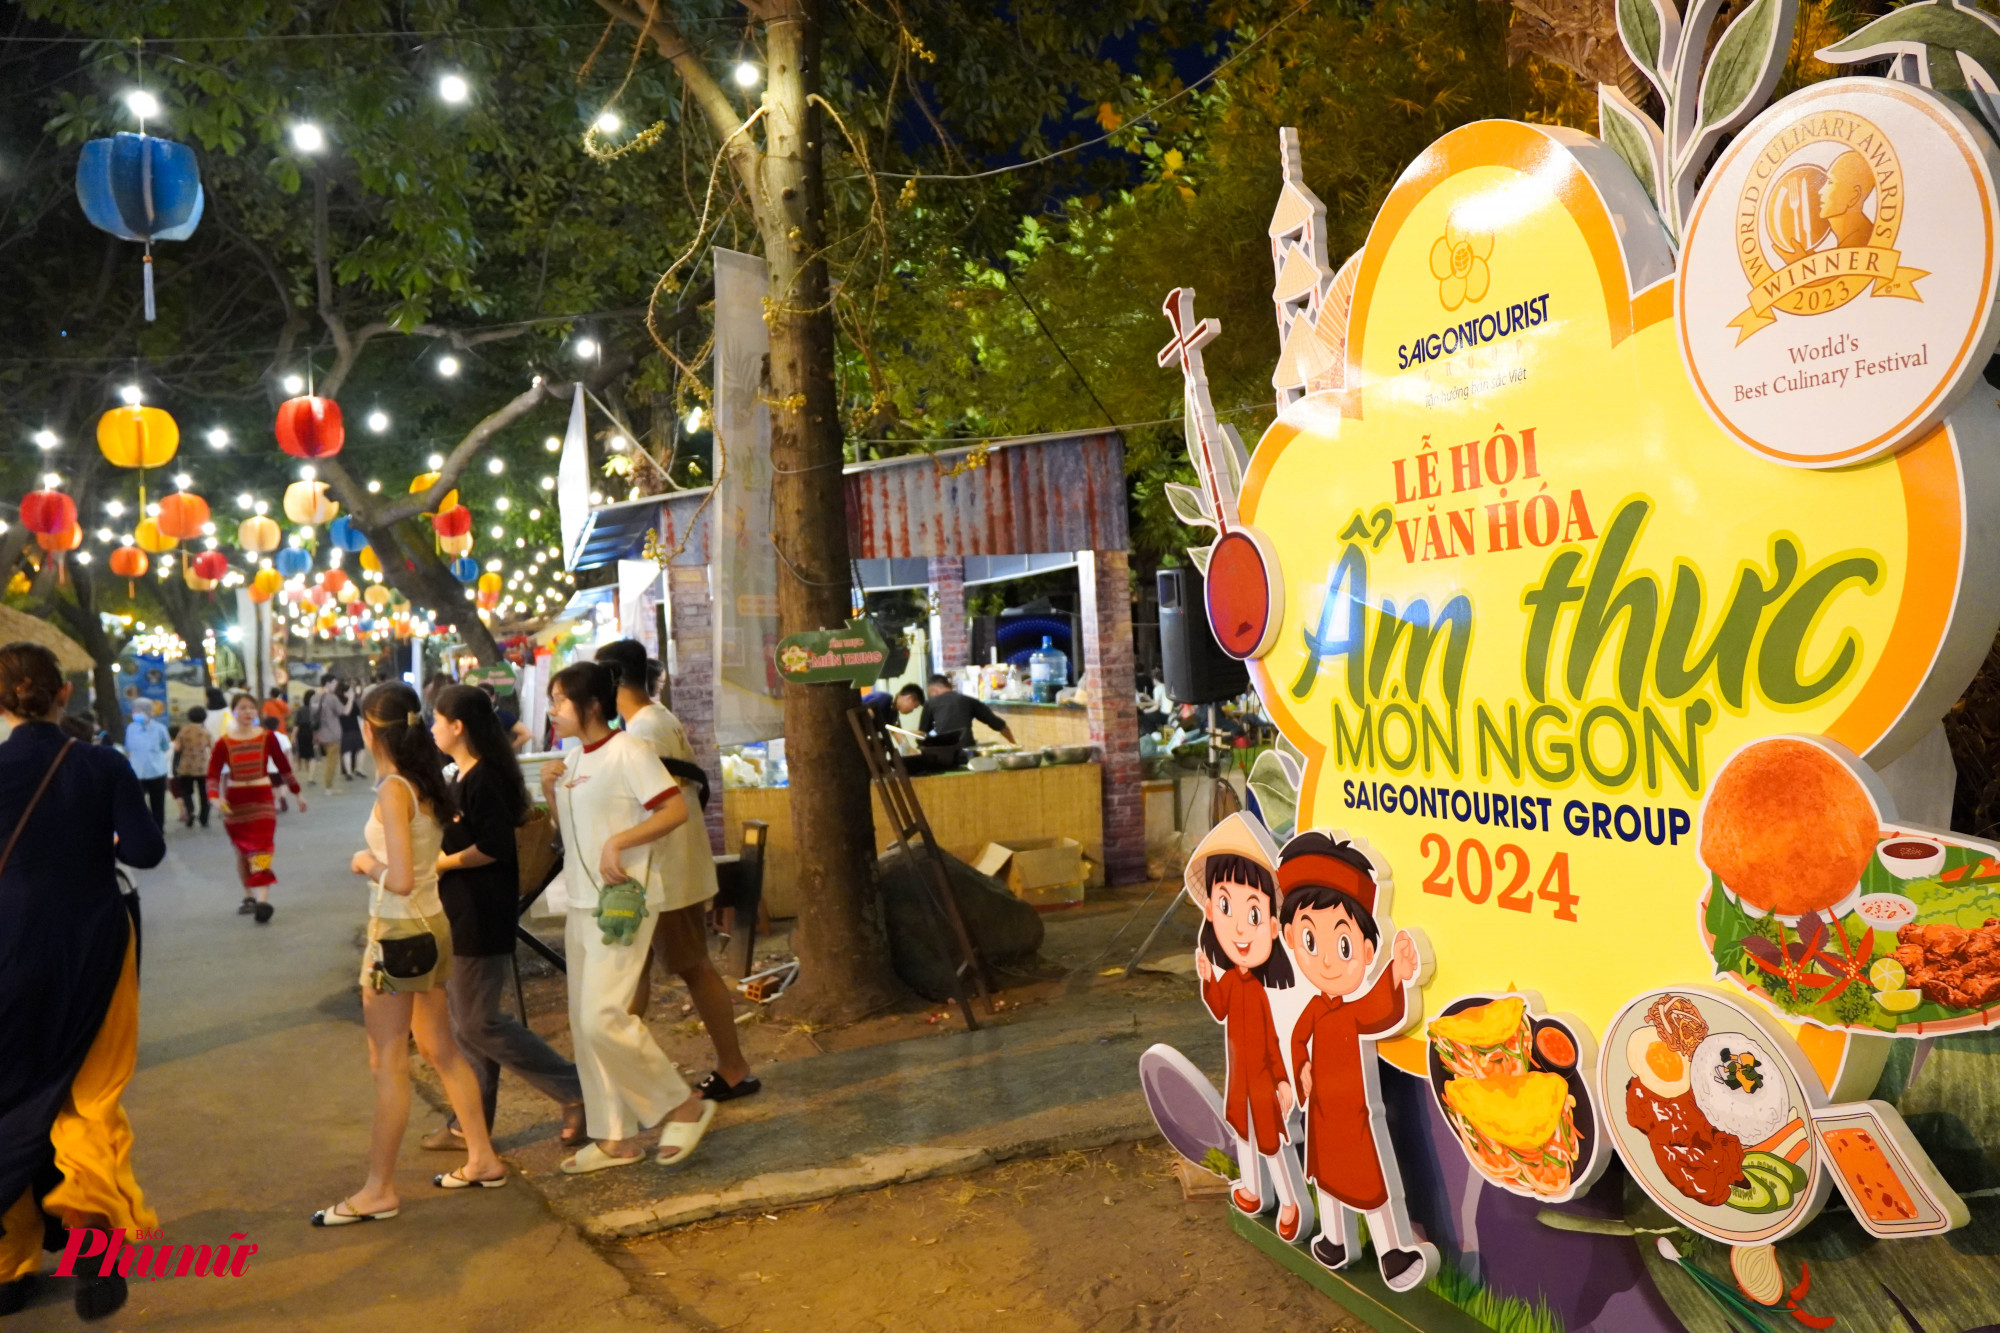 Lễ hội Văn hóa Ẩm thực, Món ngon Saigontourist Group 2024 mở cửa phục vụ công chúng từ 16g-22g mỗi ngày, liên tục từ ngày 28-31/3/2024 tại Khu du lịch Văn Thánh.